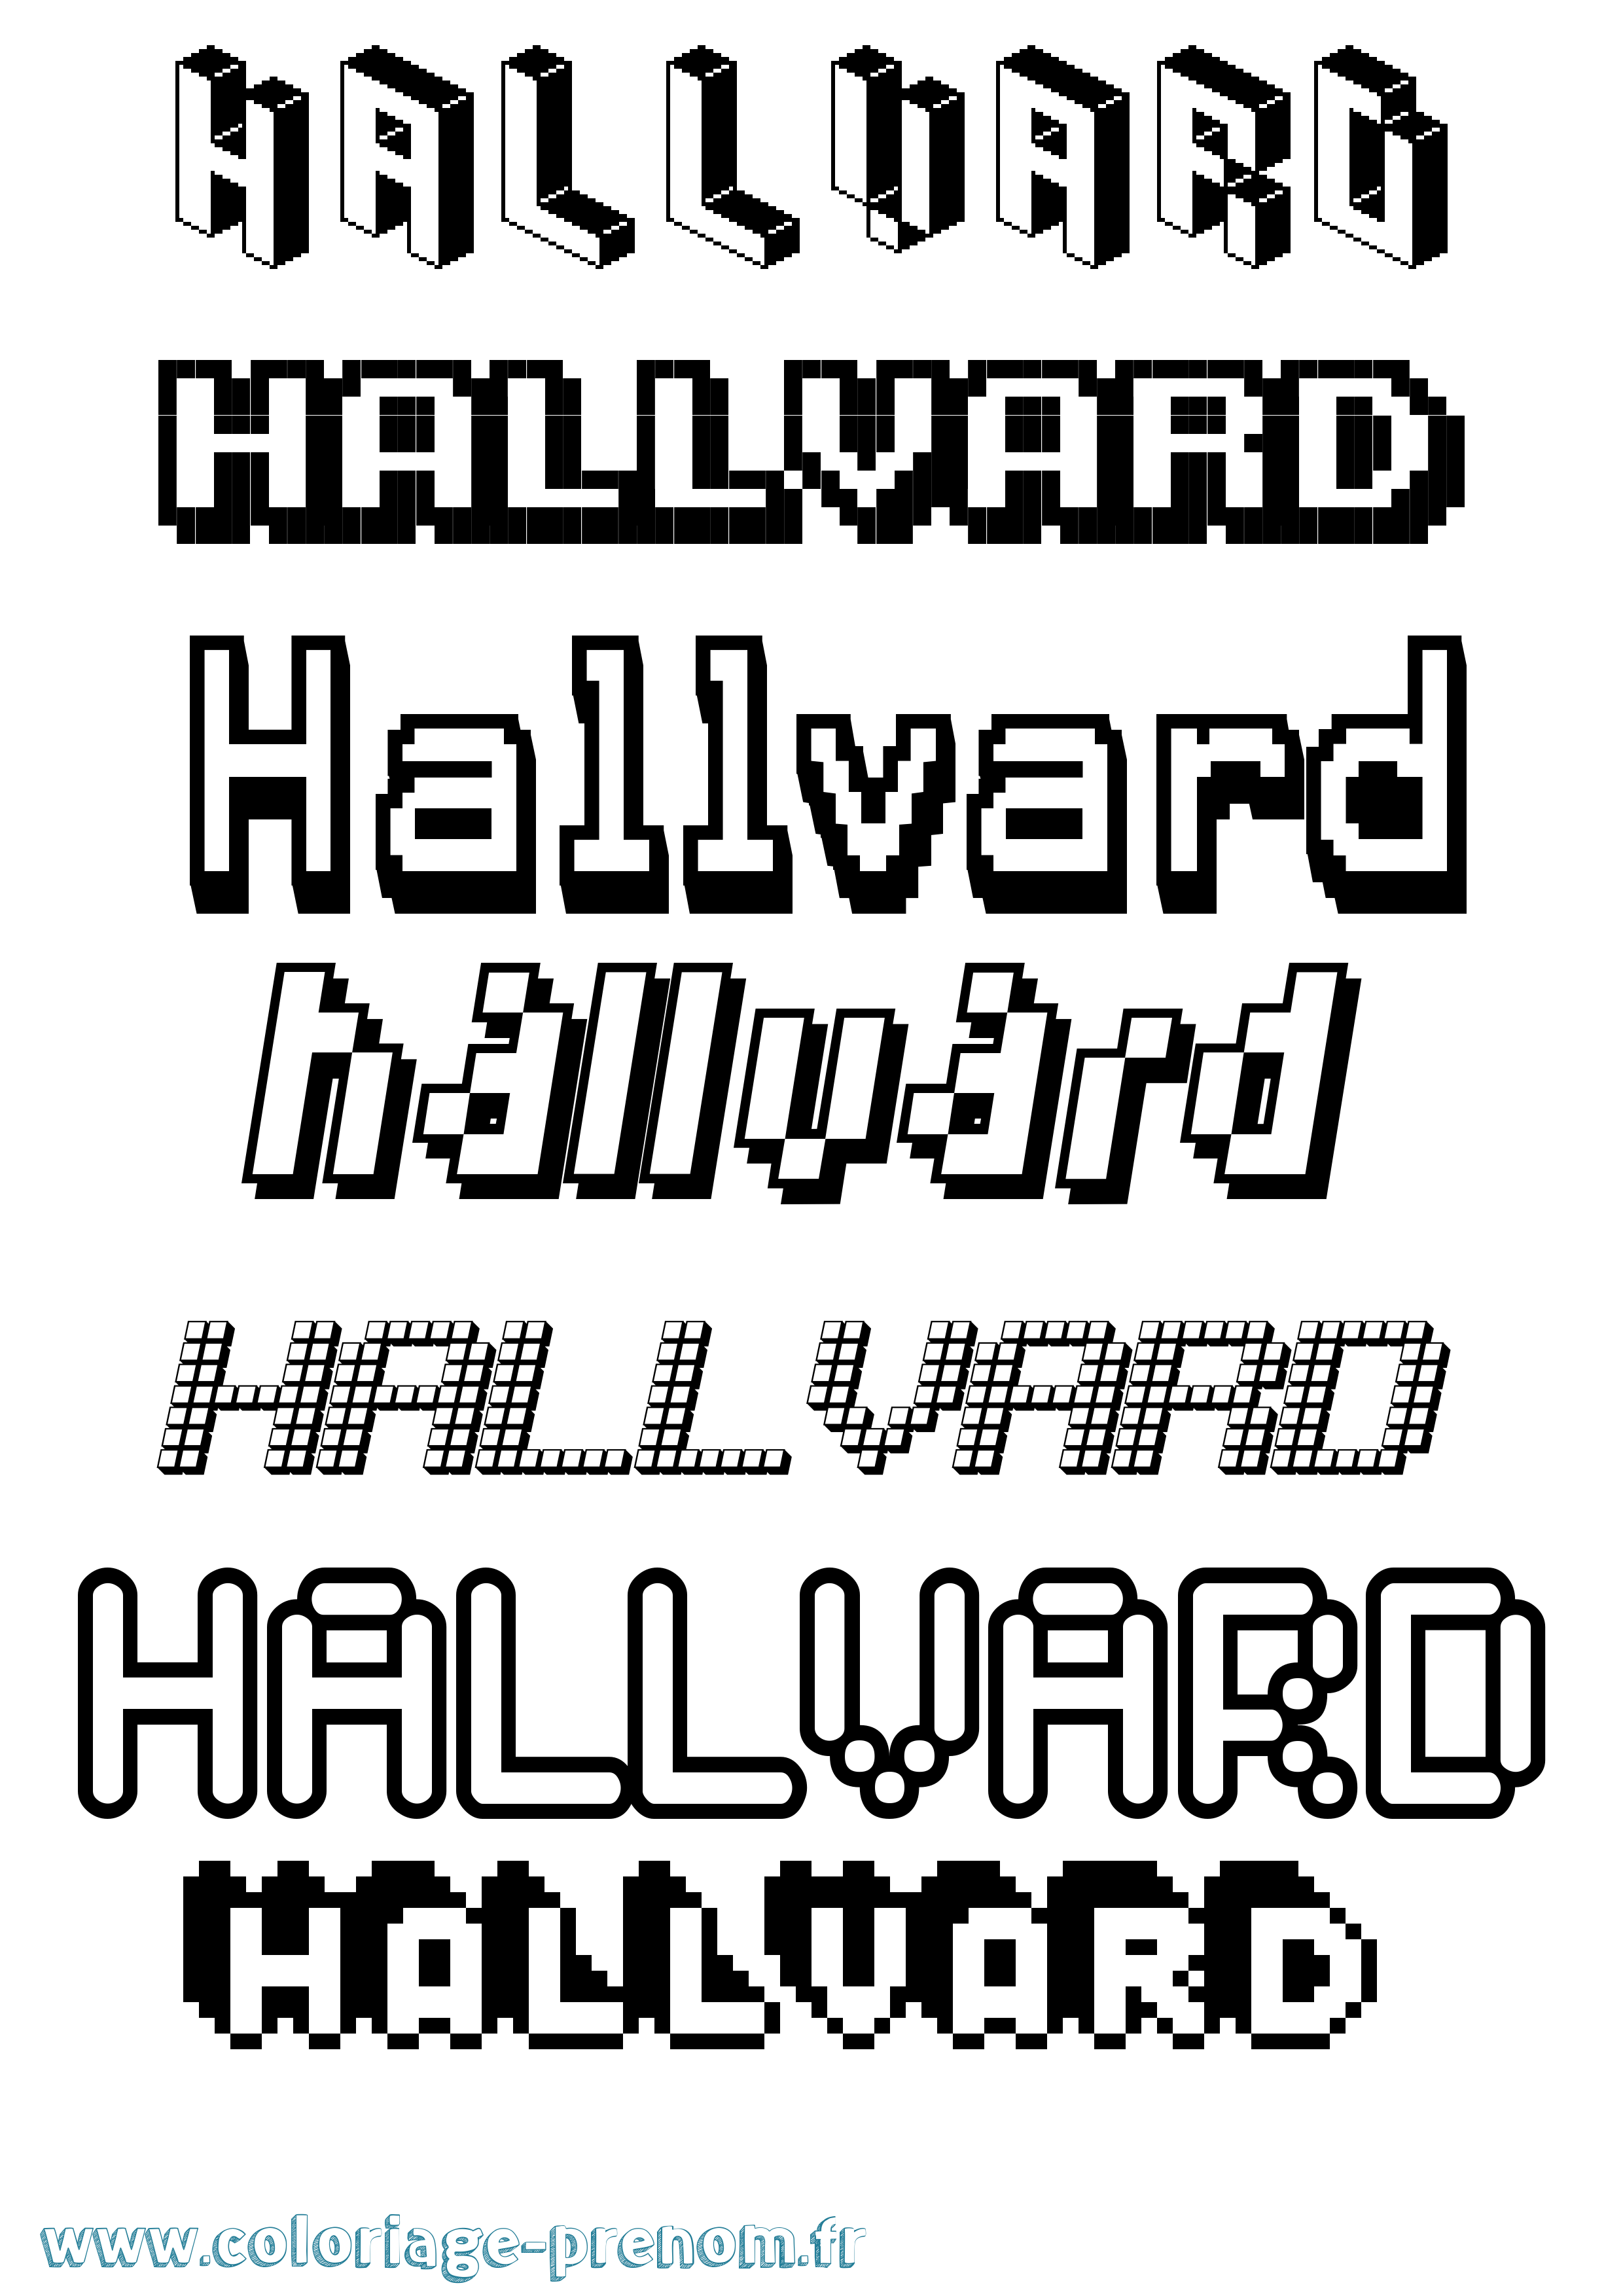 Coloriage prénom Hallvard Pixel